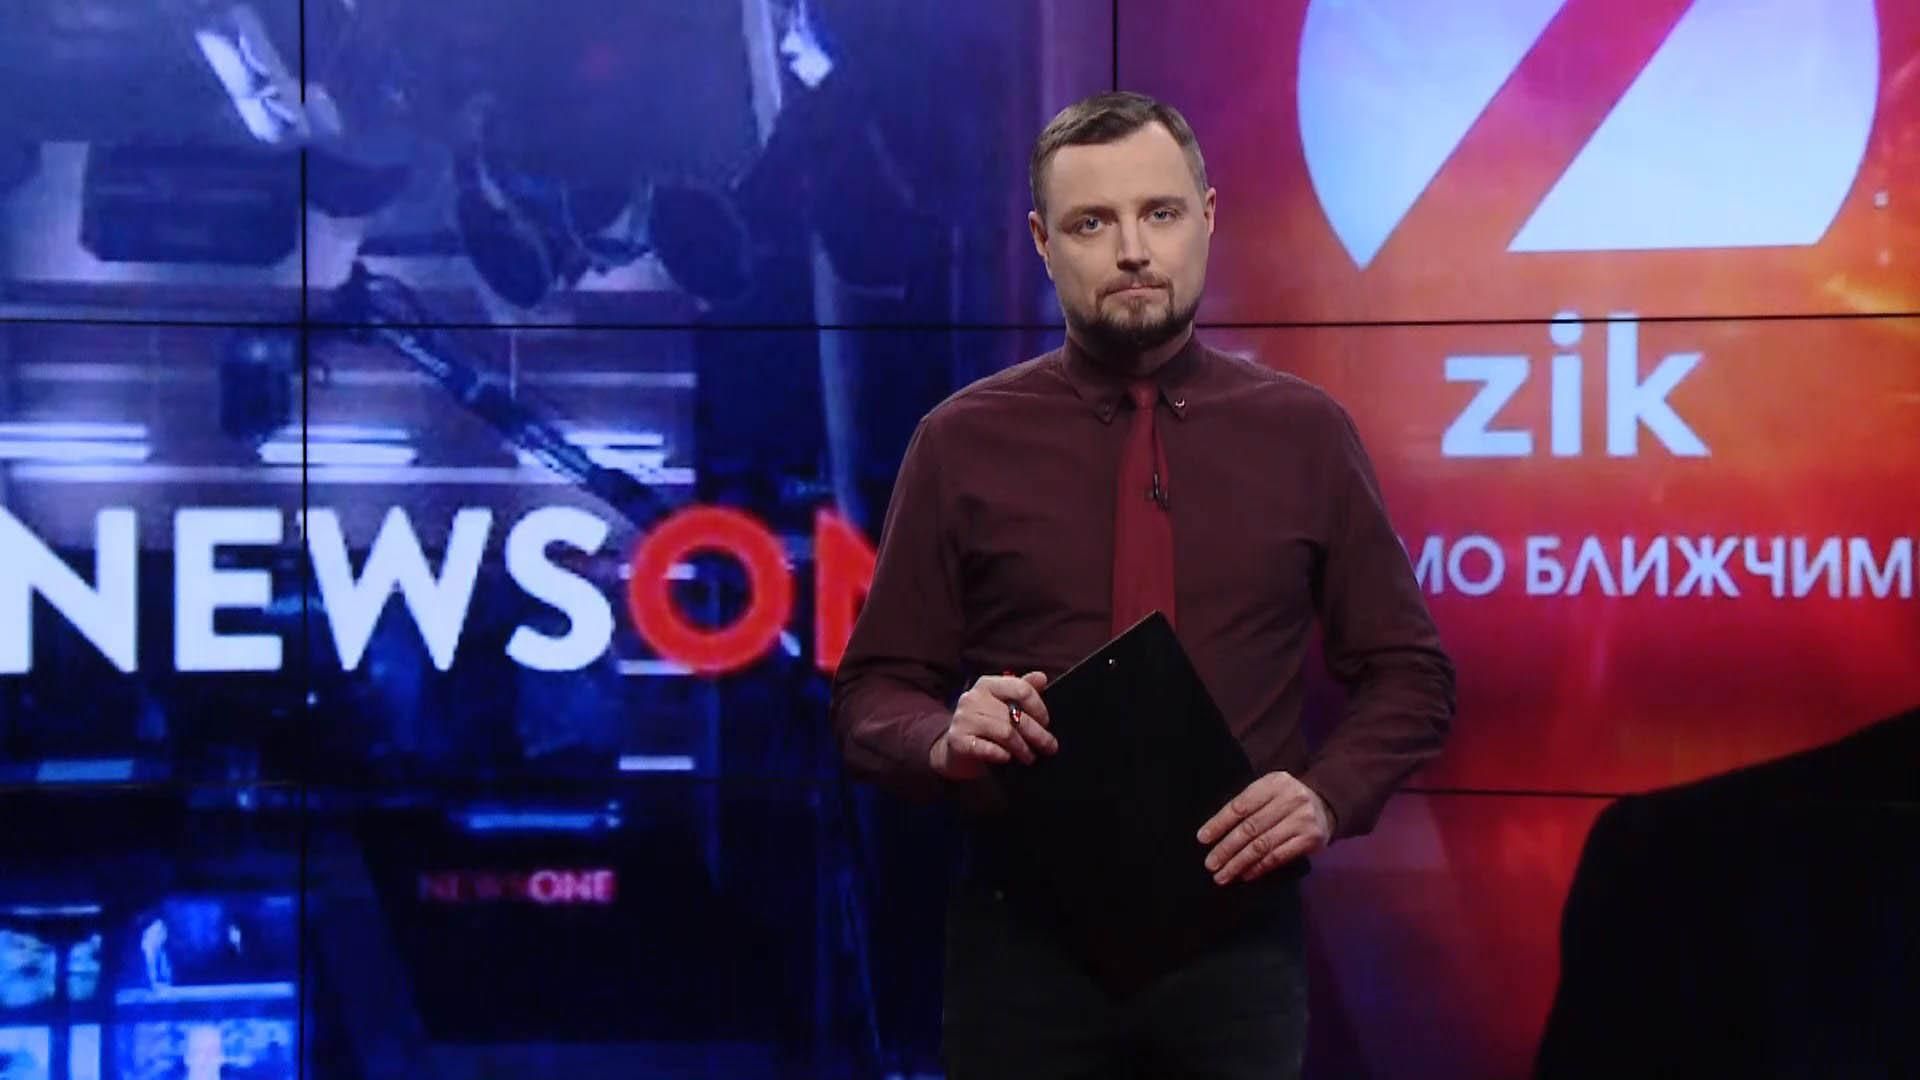 Спецефір Pro новини: Зеленський‌ ‌вимкнув 112 Україна,‌ ‌ZIK, ‌Newsone